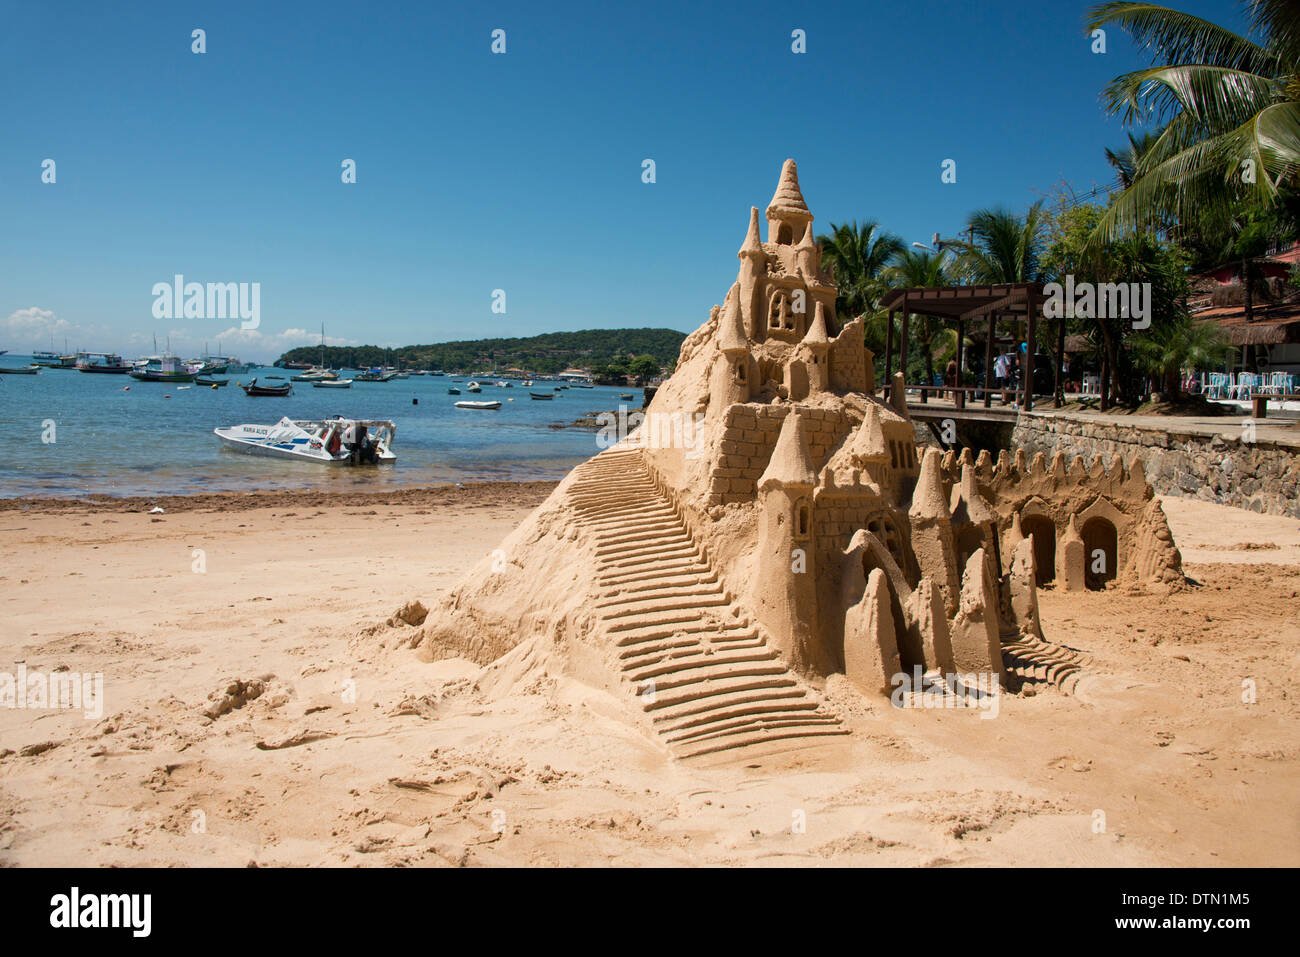 Brazil, Rio de Janeiro, Buzios. Sand castle on beach. Stock Photo